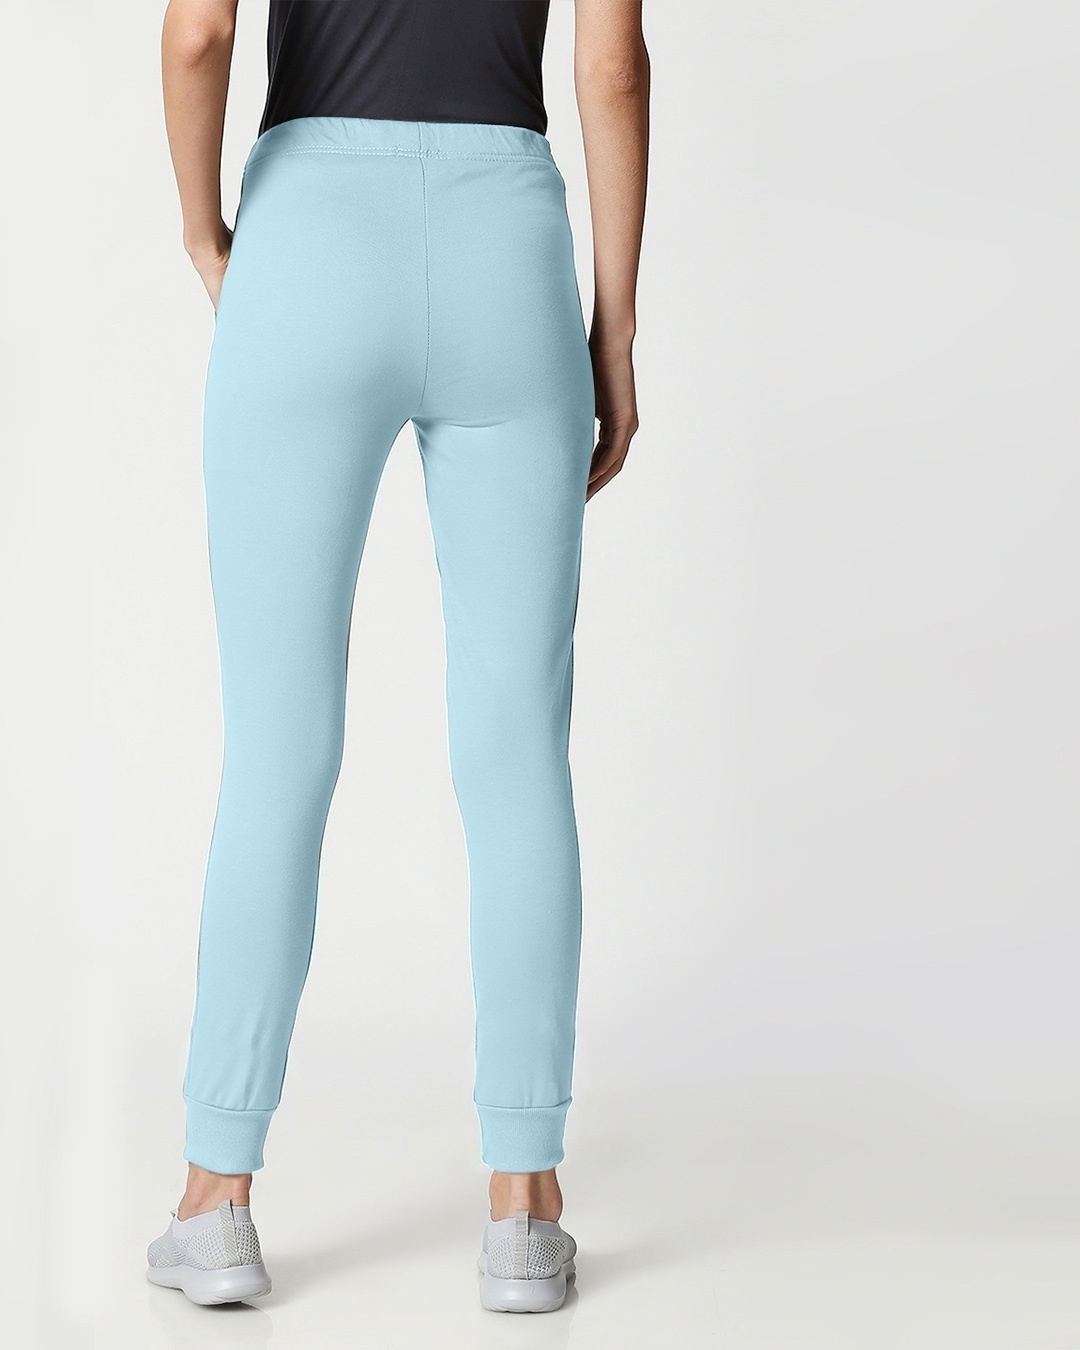 Shop Women's Sky Blue Slim Fit Casual Jogger Pants-Design